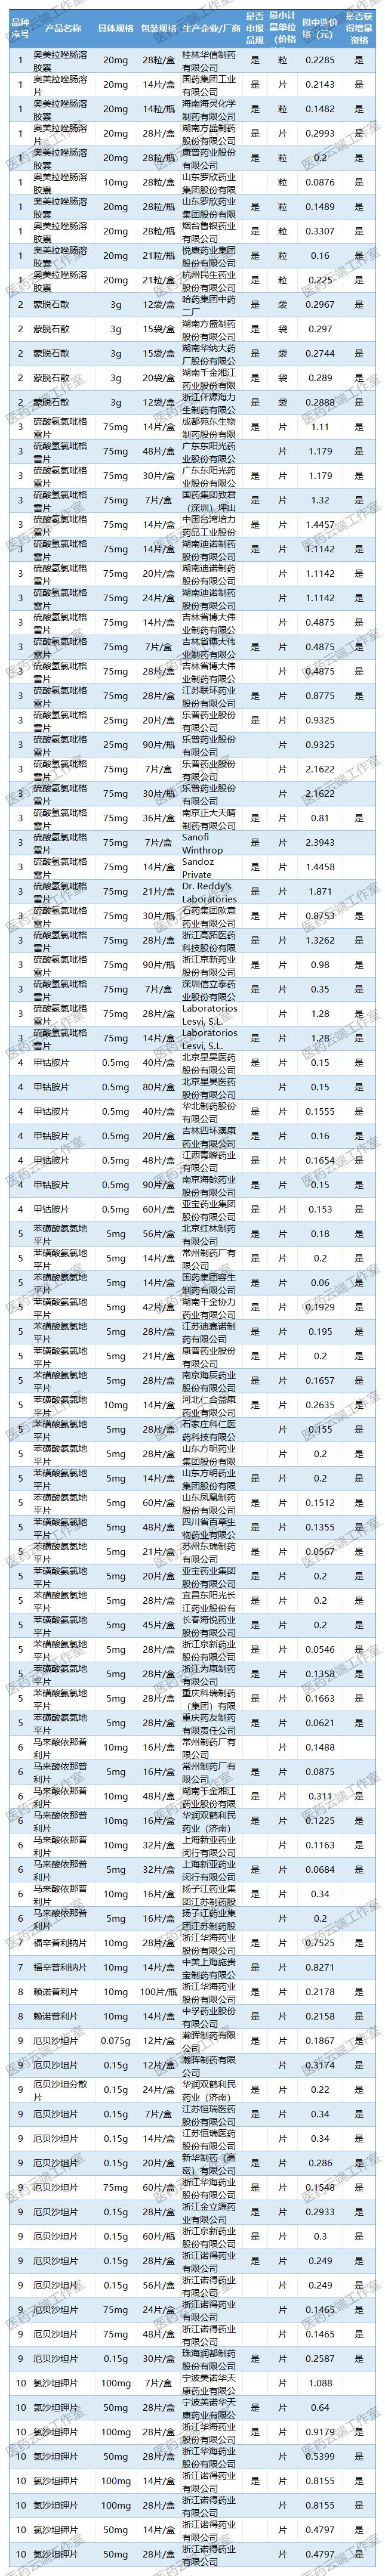 注射用培美曲塞二钠有13个厂家拟中选，扬子江、华海、科伦等企业均获得增量资格，反而4+7集采中选厂家四川汇宇拟中选却未获得增量资格。